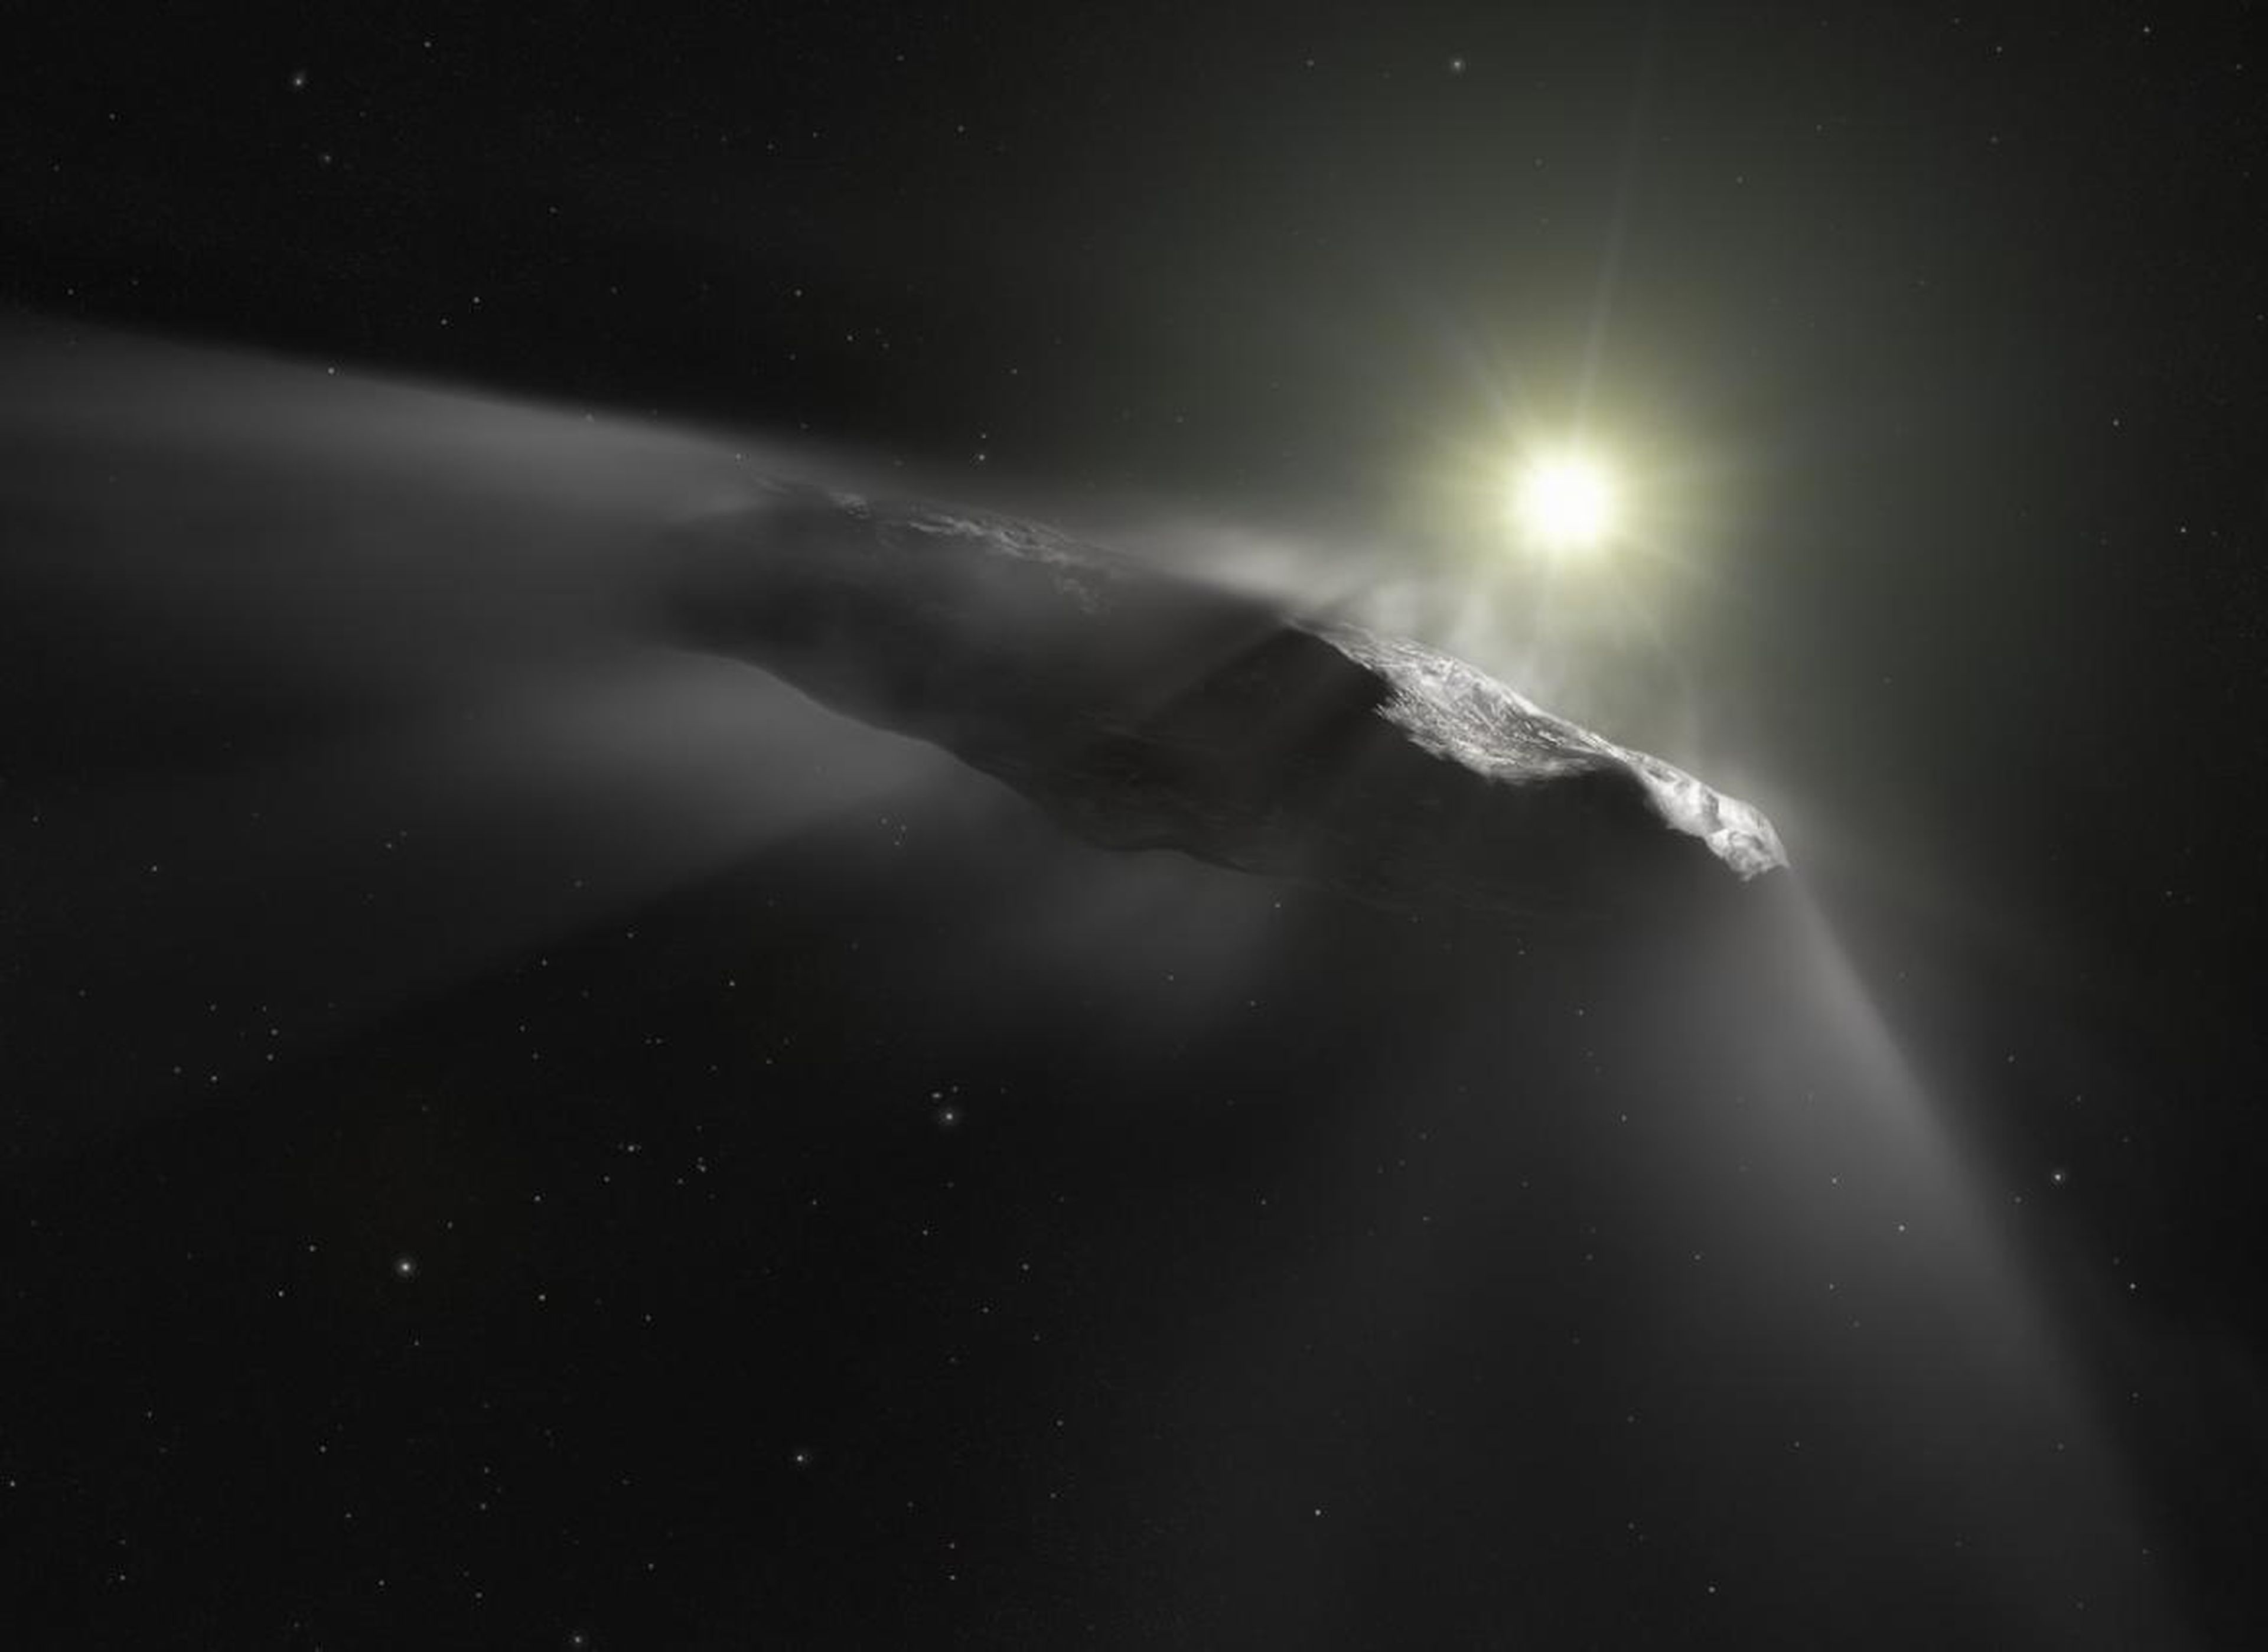 Representación artística del objeto interestelar de 'Oumuamua.